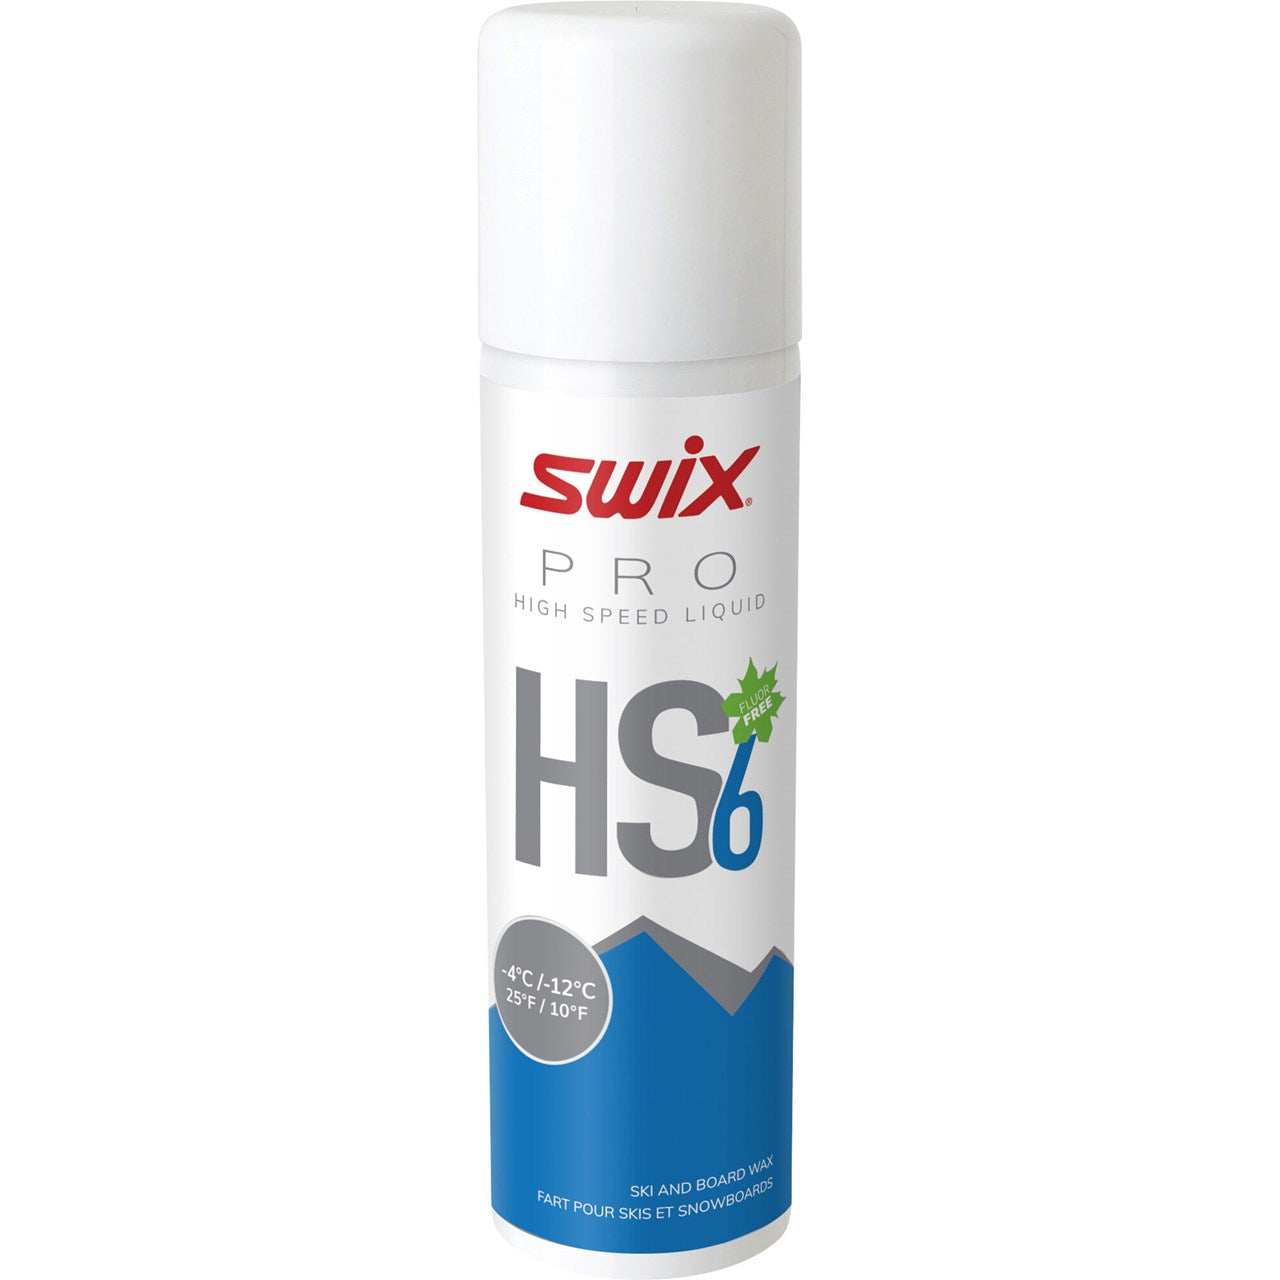 SWIX HS6 Liq. Blå, -4°C/-12°C, 125ml